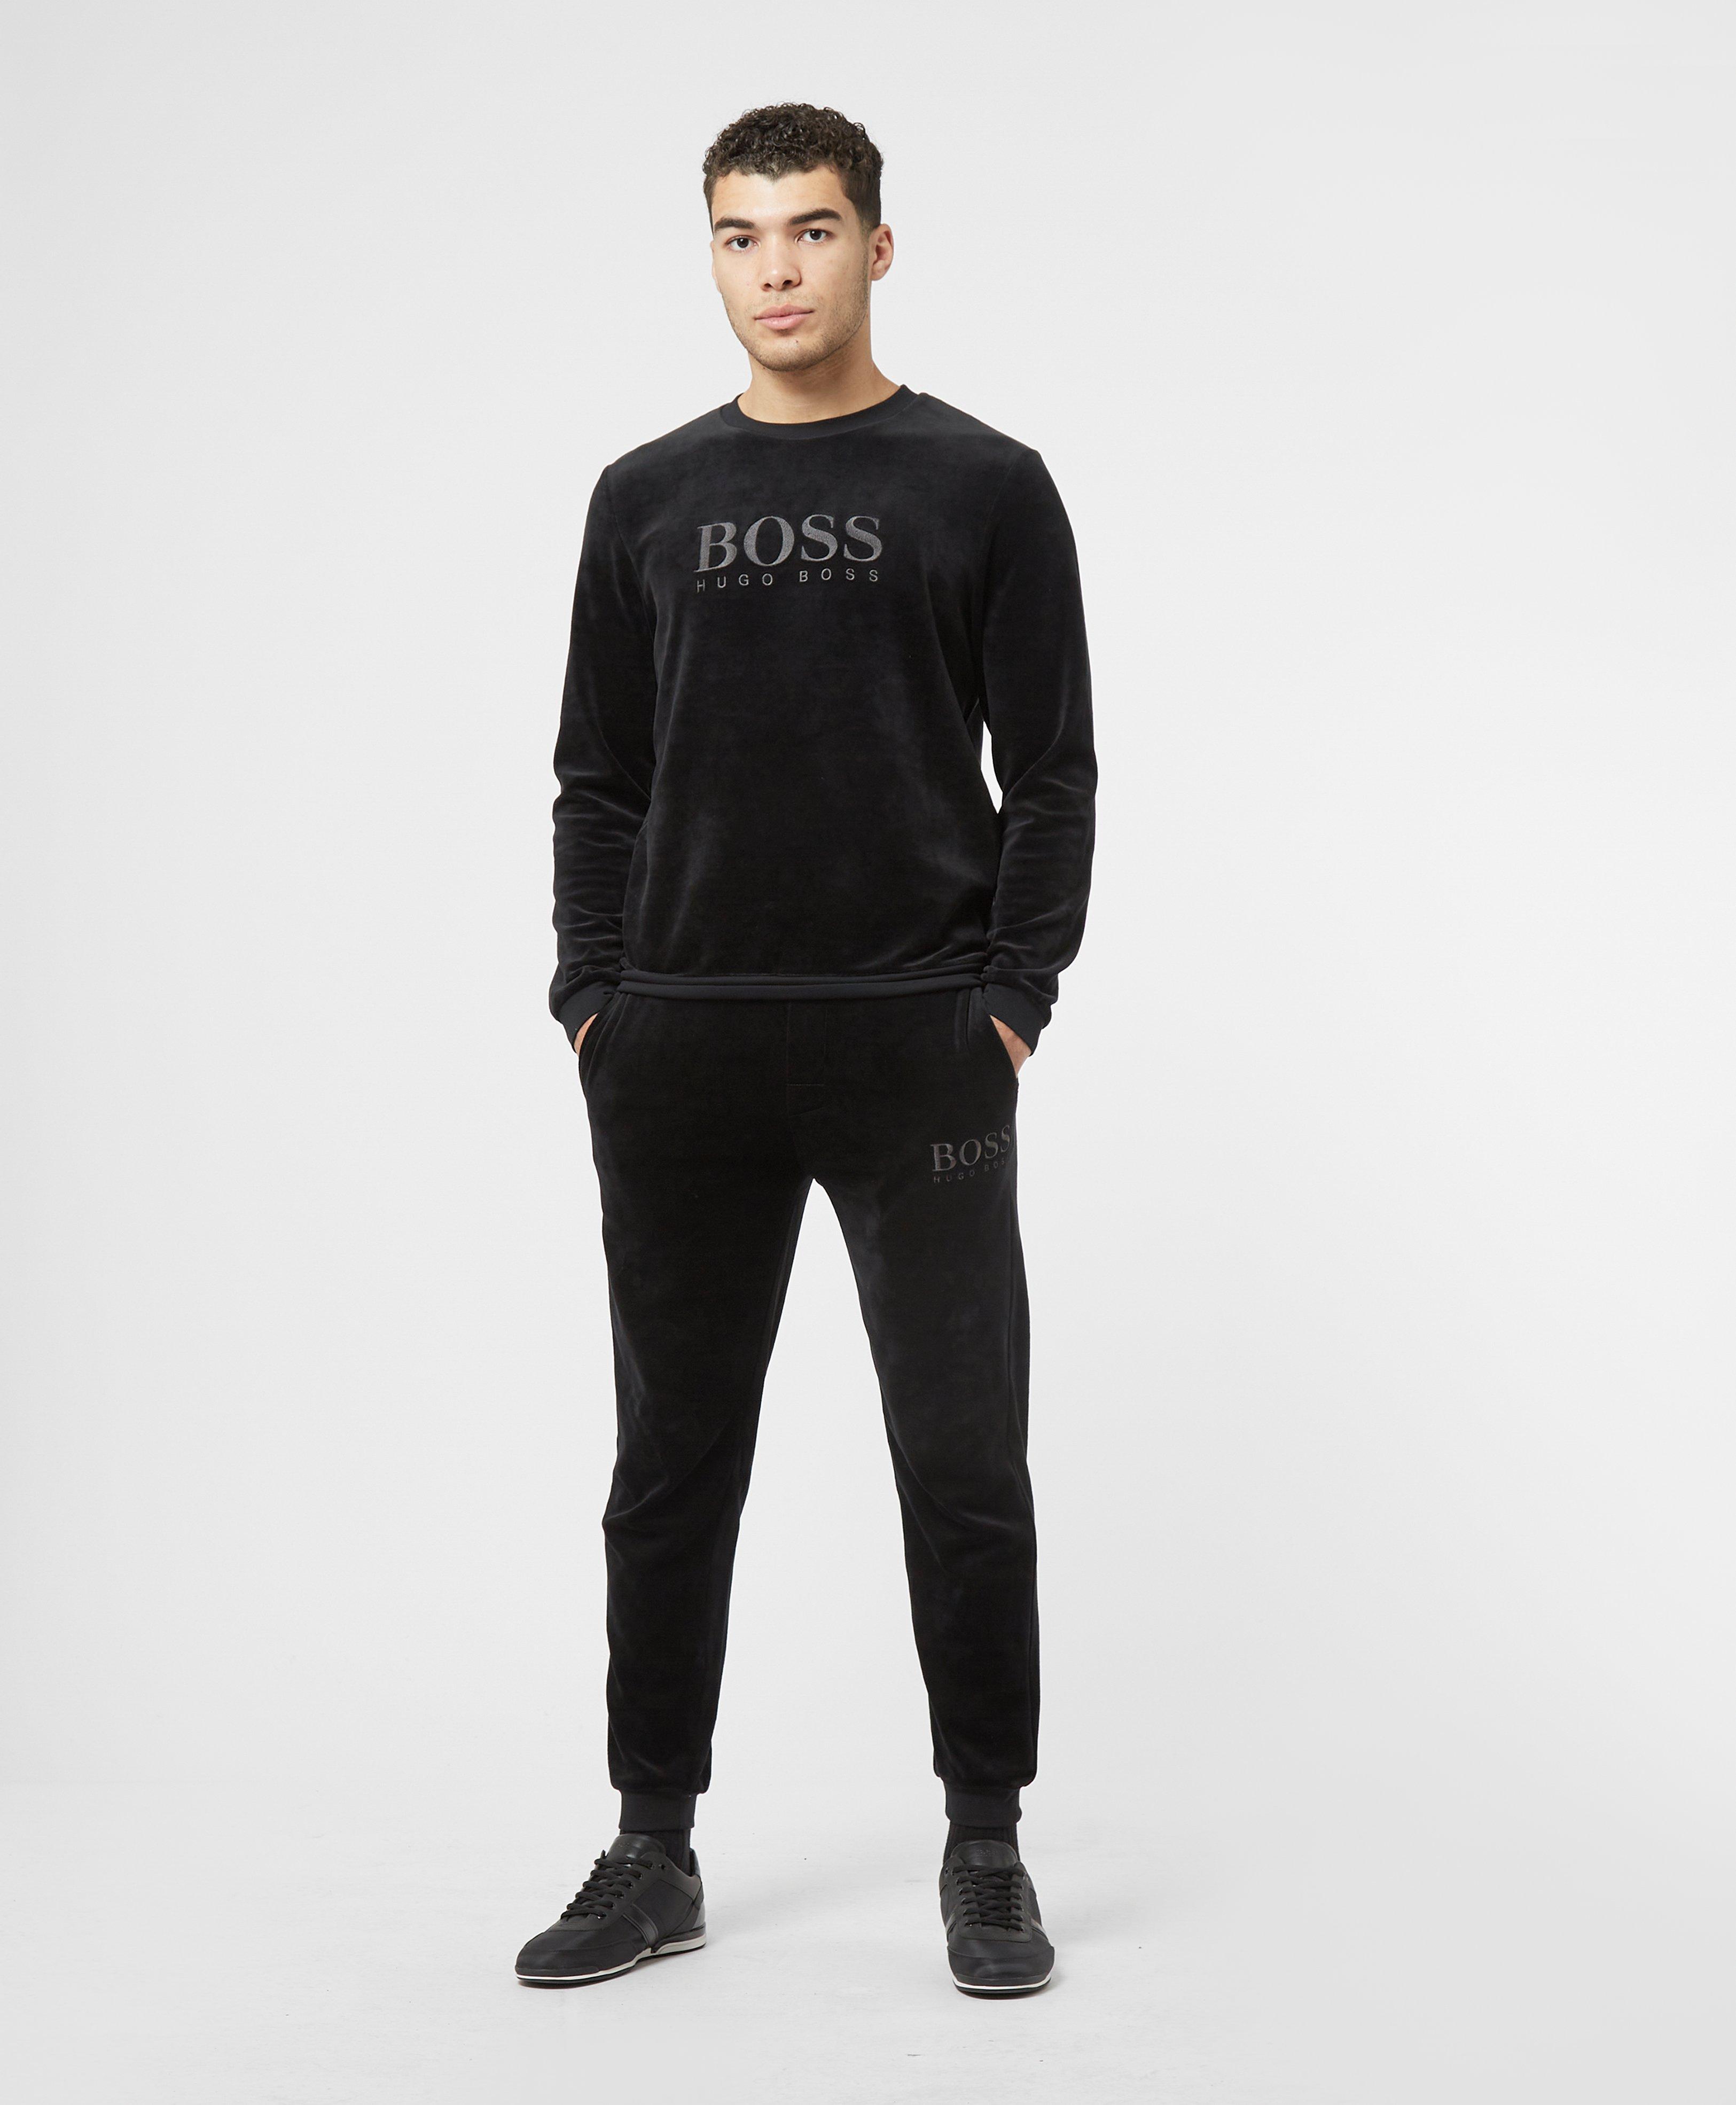 BOSS by HUGO BOSS Velour Joggers in Black for Men | Lyst